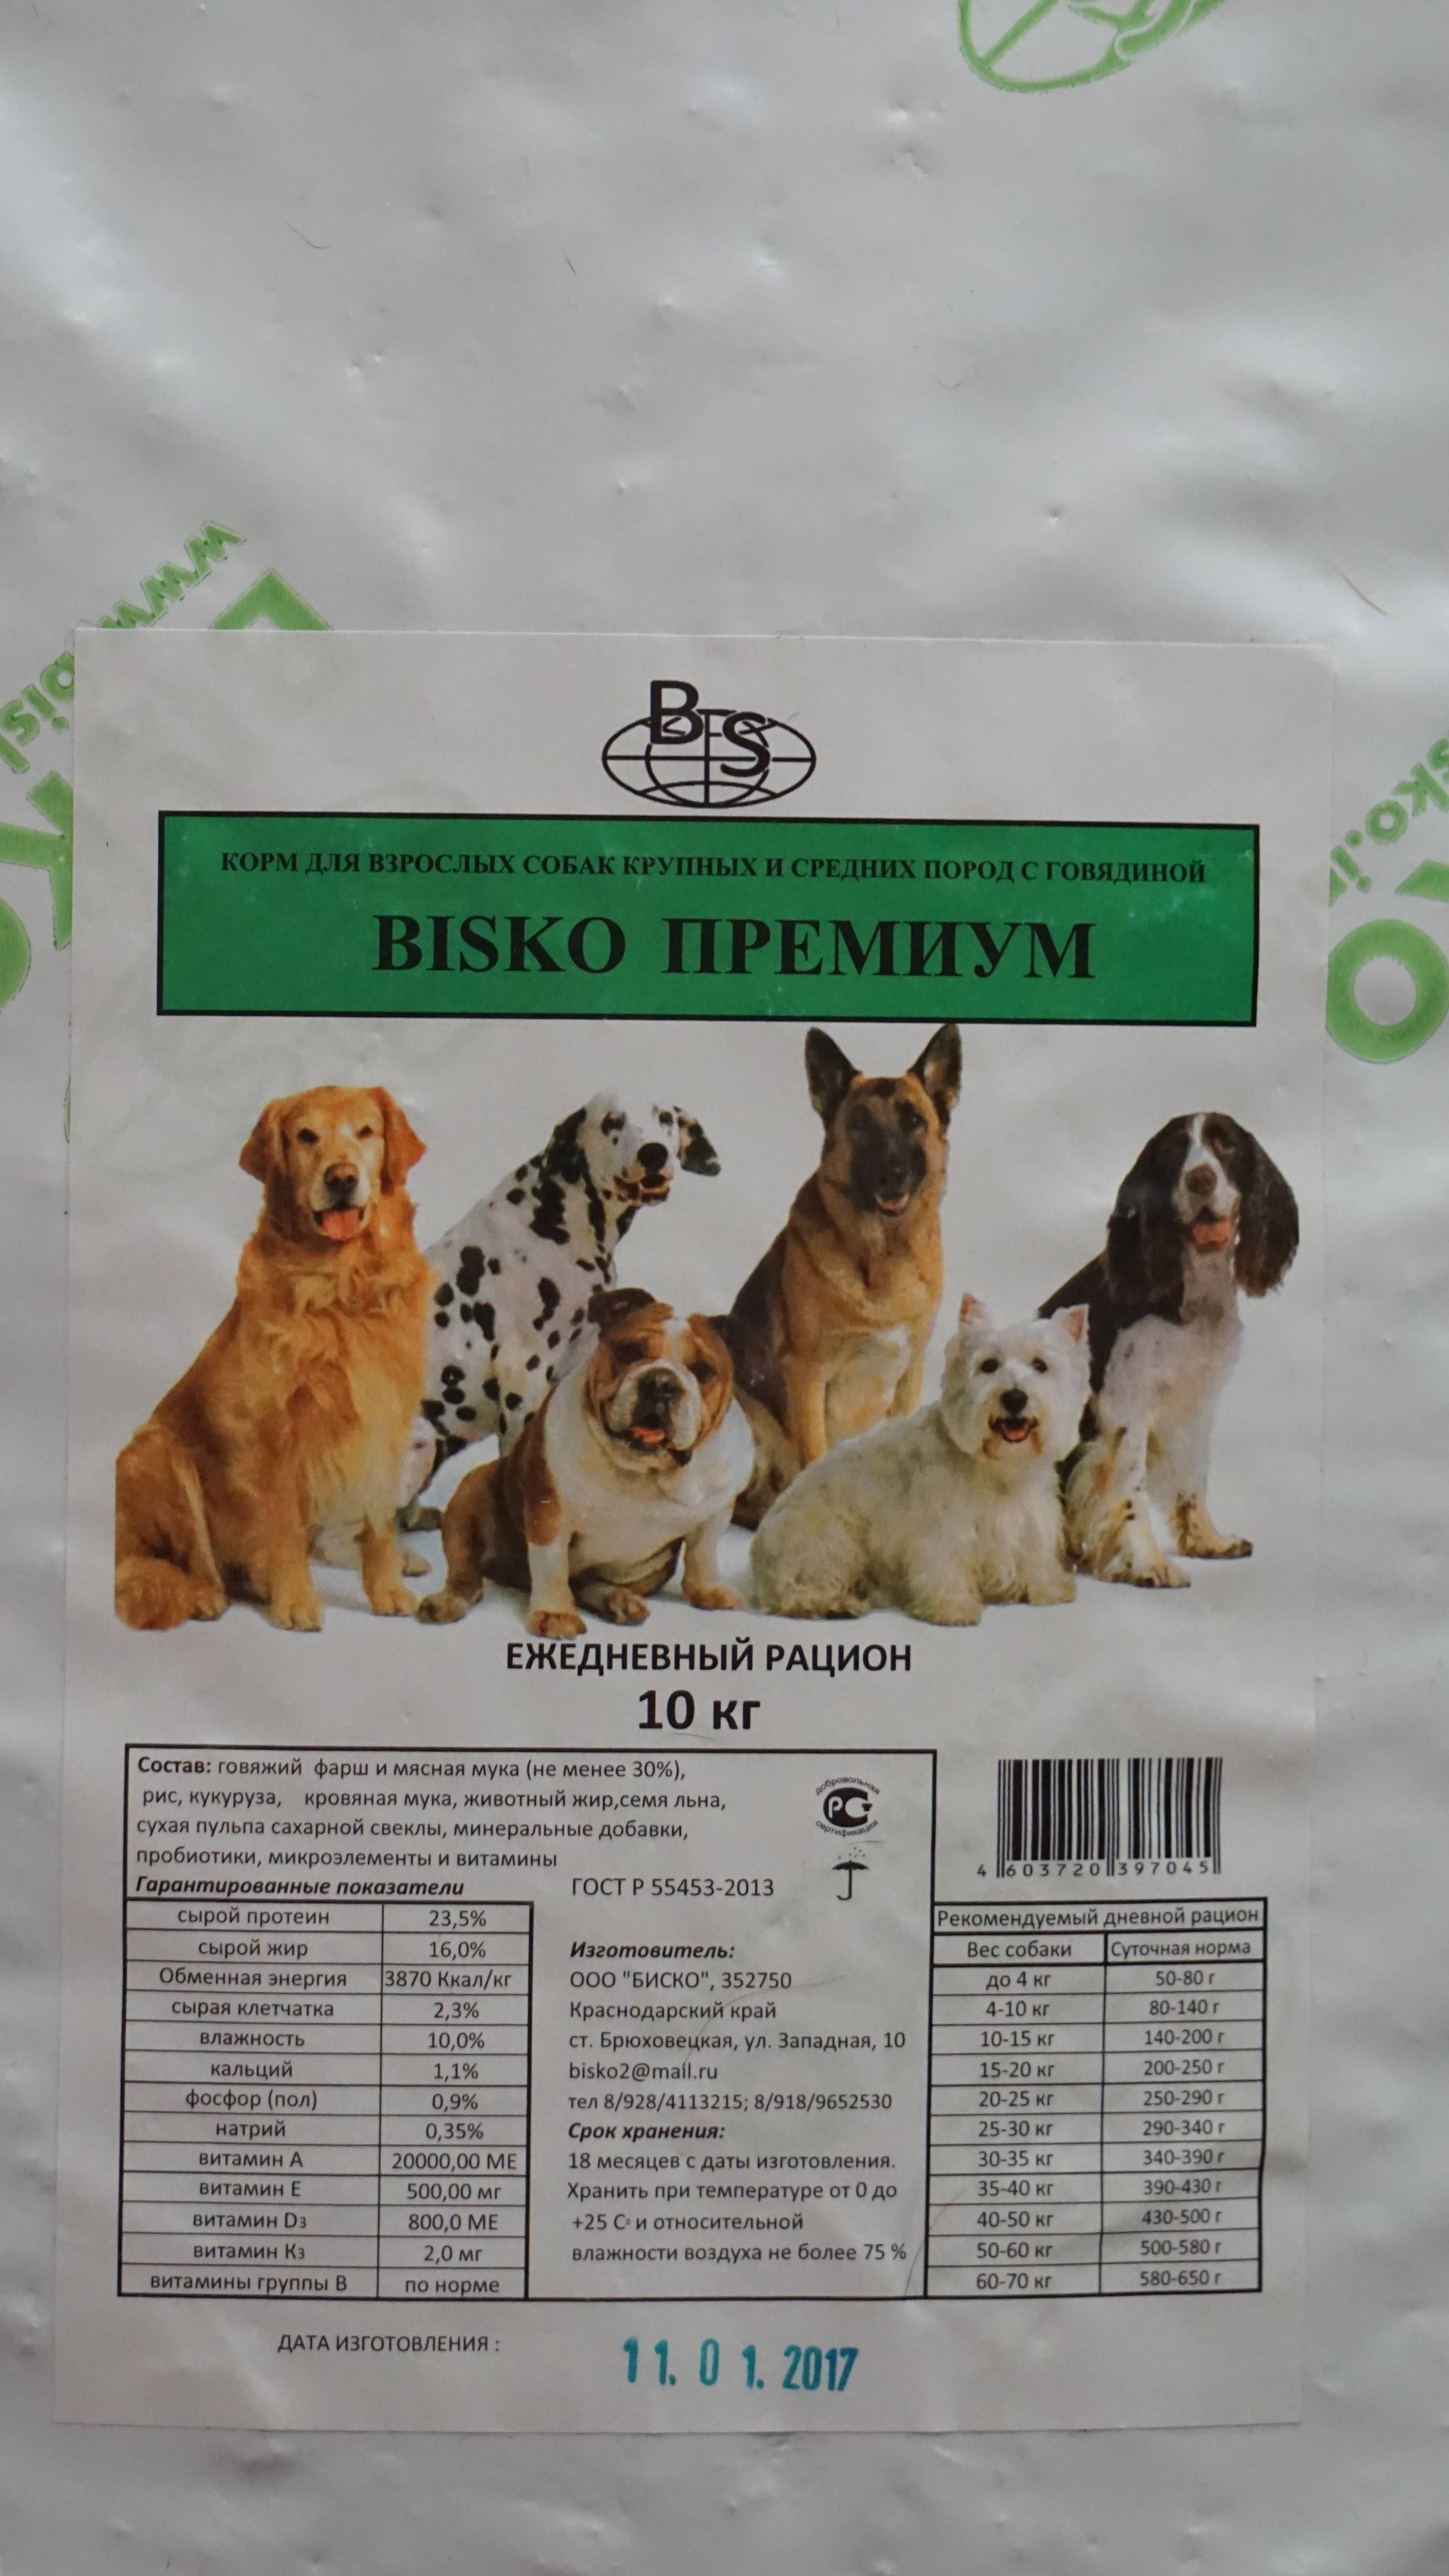 Биско (bisco) – корм для собак: отзывы, состав, цена